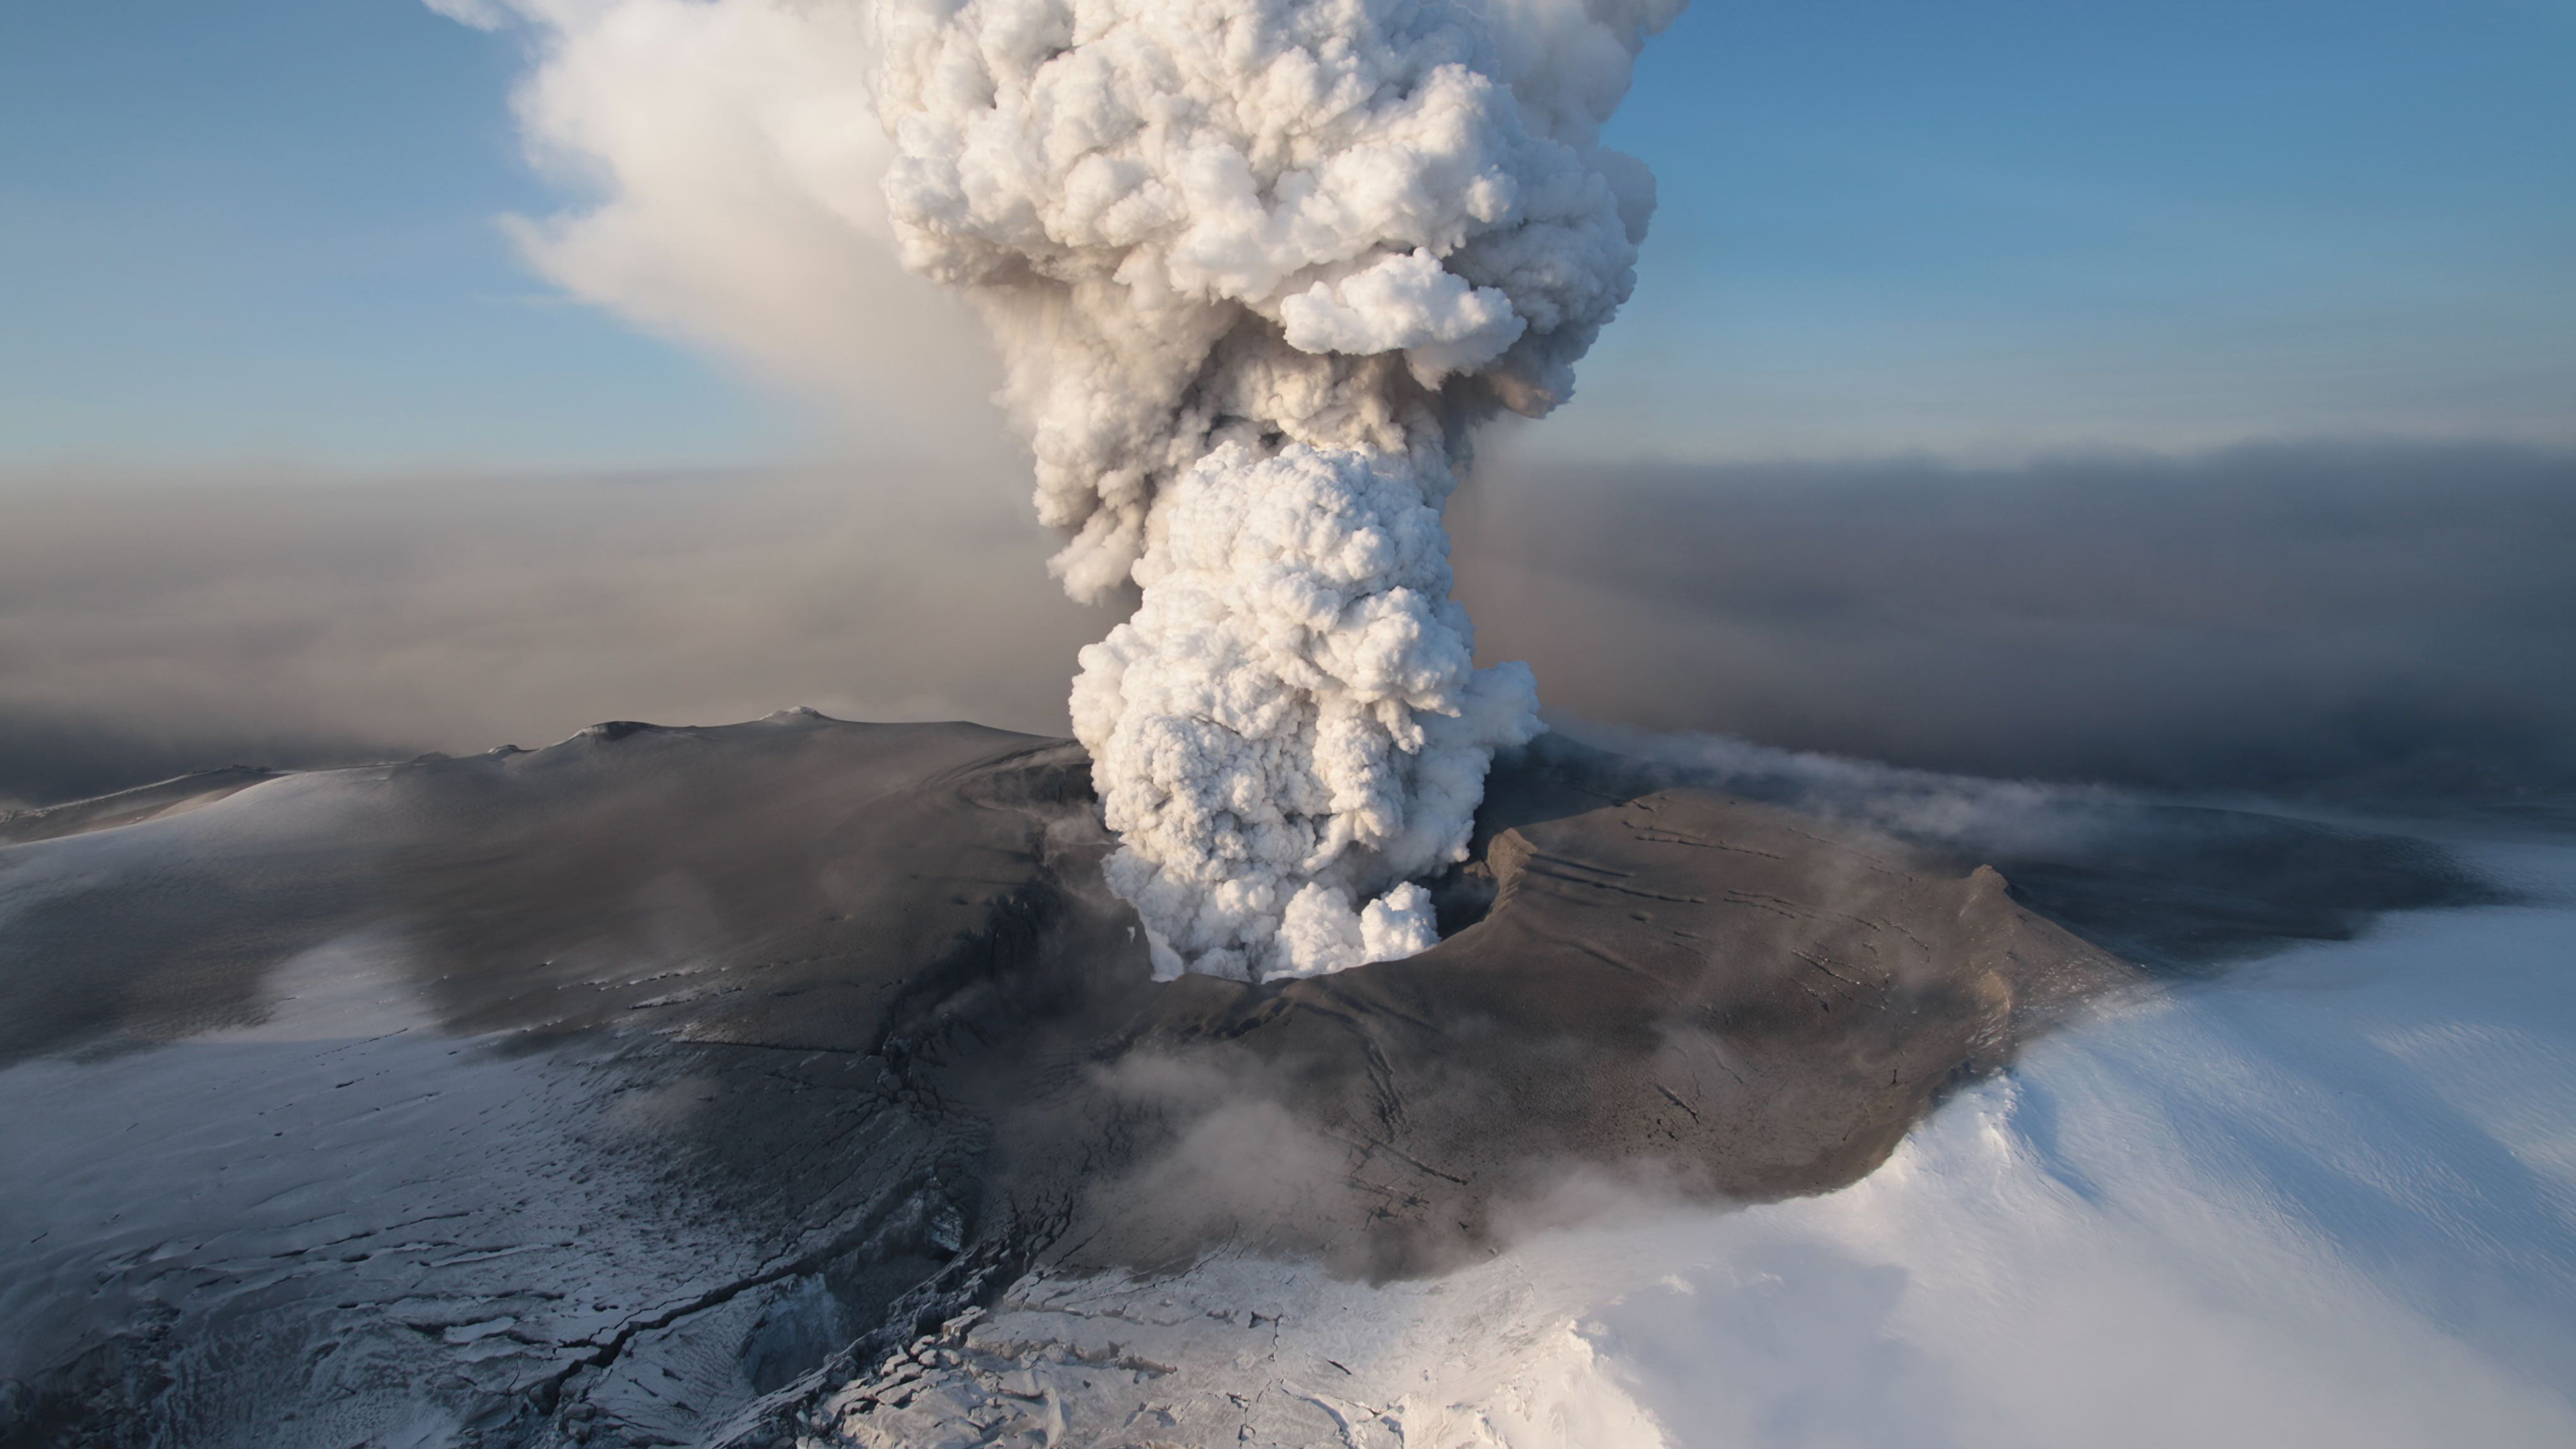 Обои 2010 извержения Eyjafjallajkull, вулкан, вулканический пепел, купол лавы, вулканического рельефа в разрешении 3840x2160